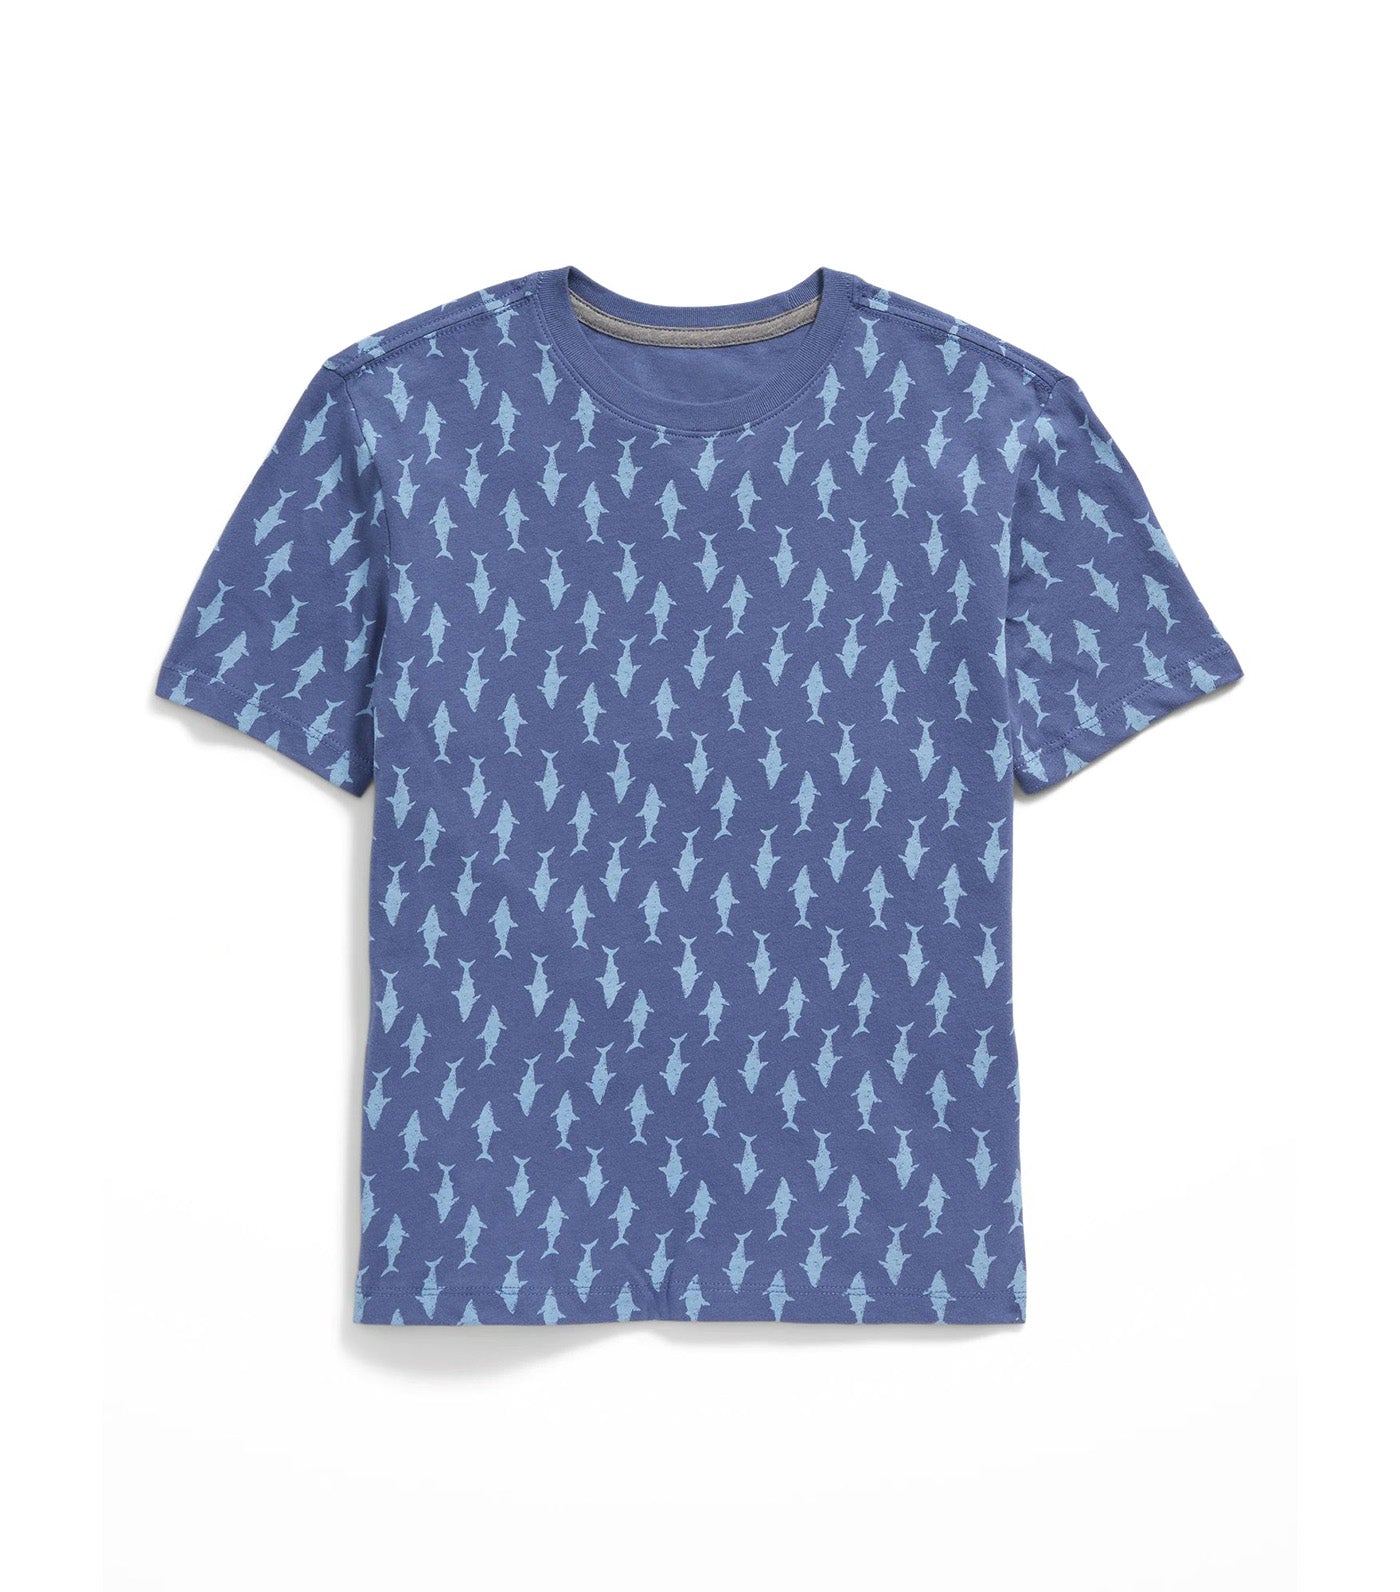 Softest Printed Crew-Neck T-Shirt for Boys - Shark Bite